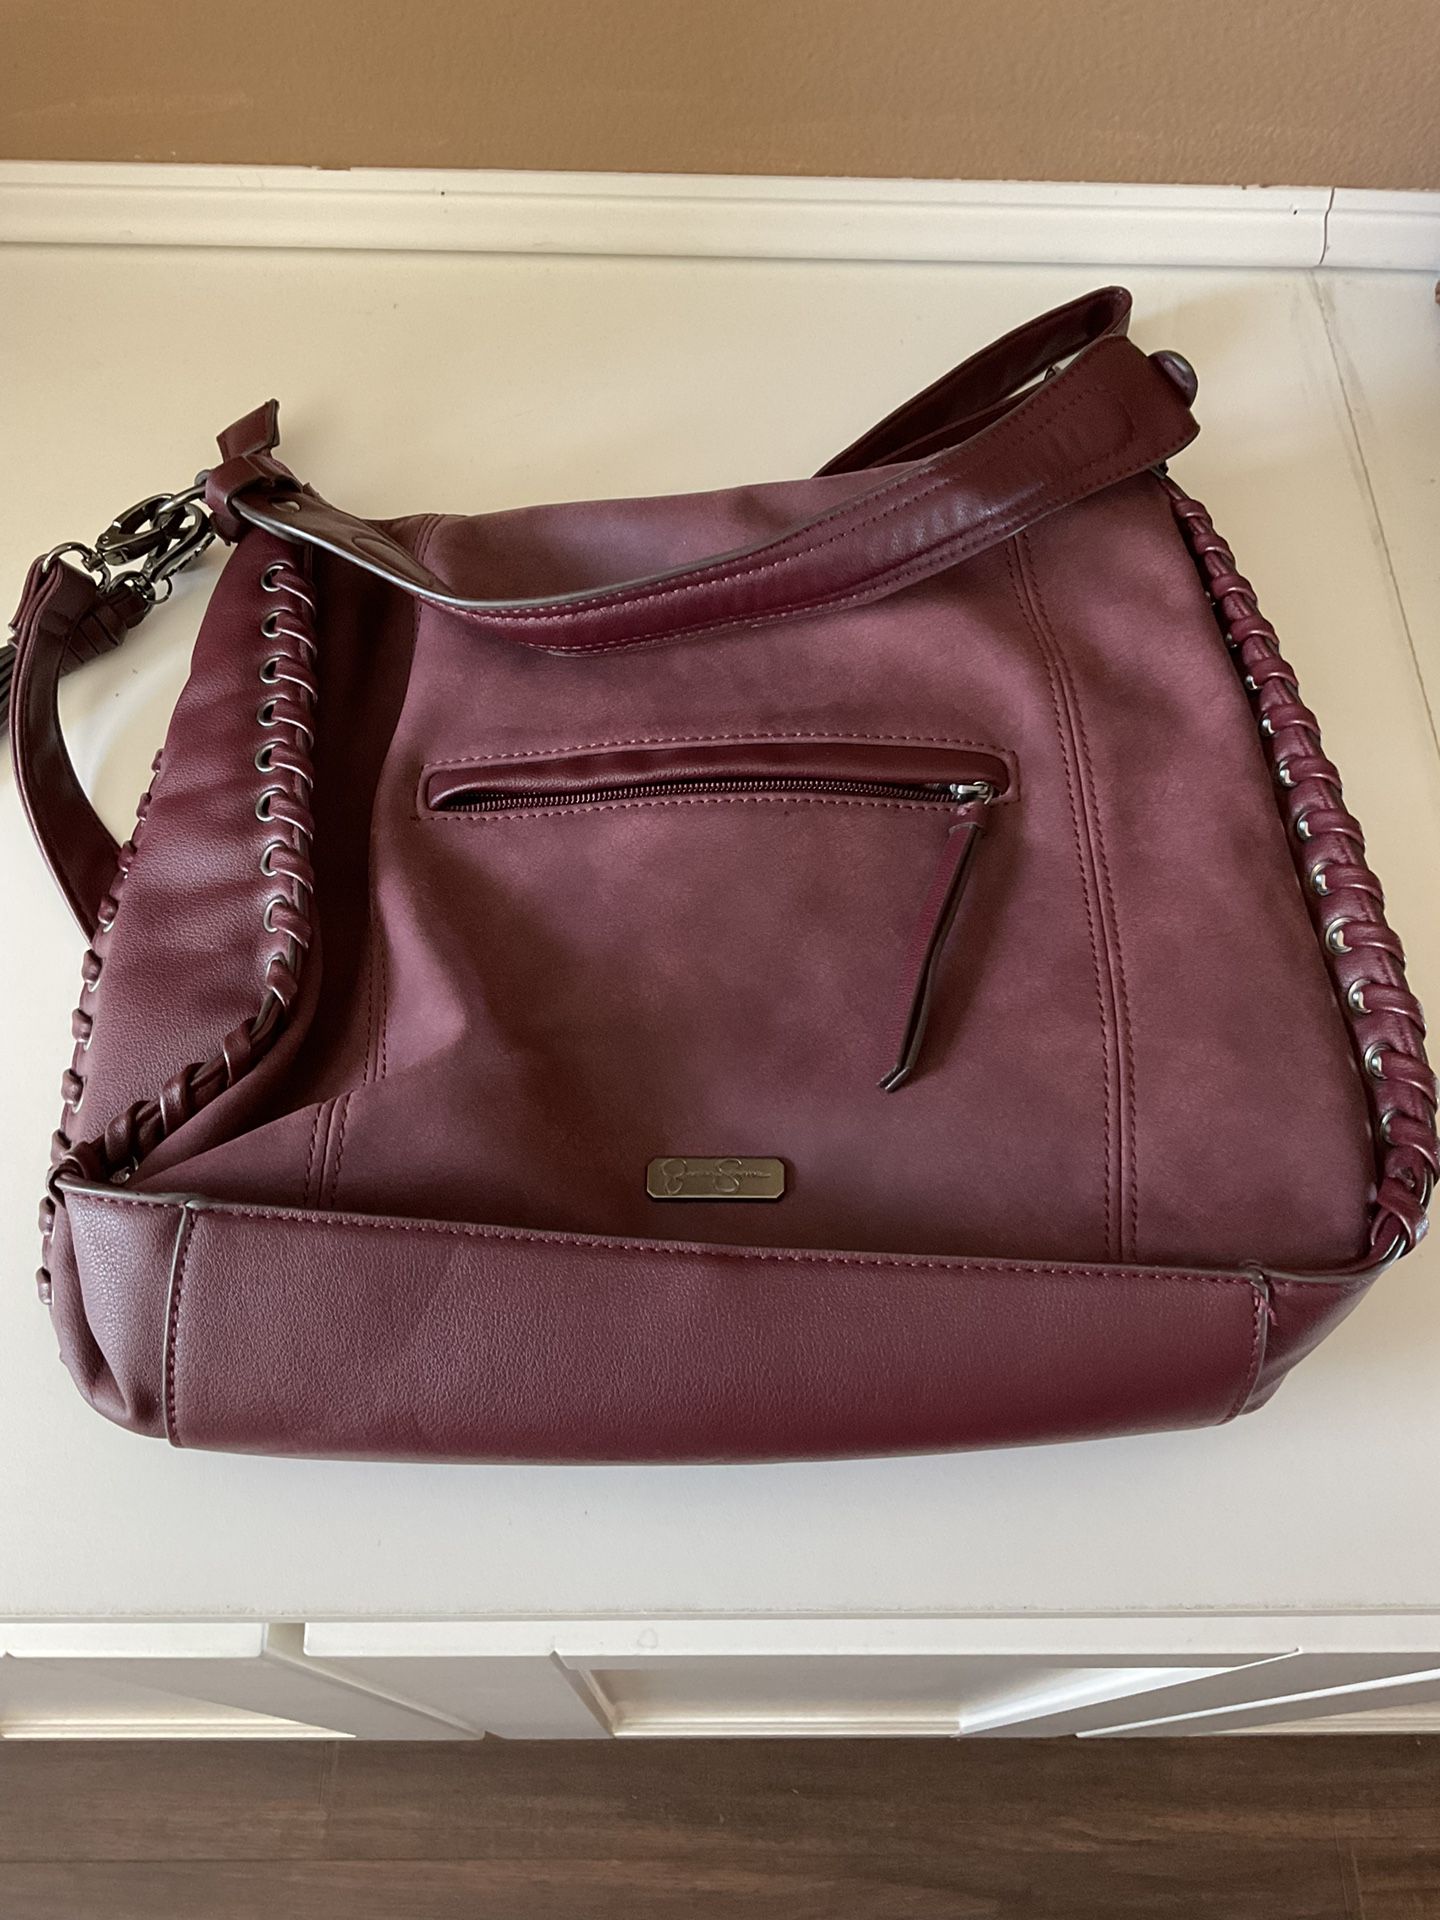 Jessica Simpson leather purse